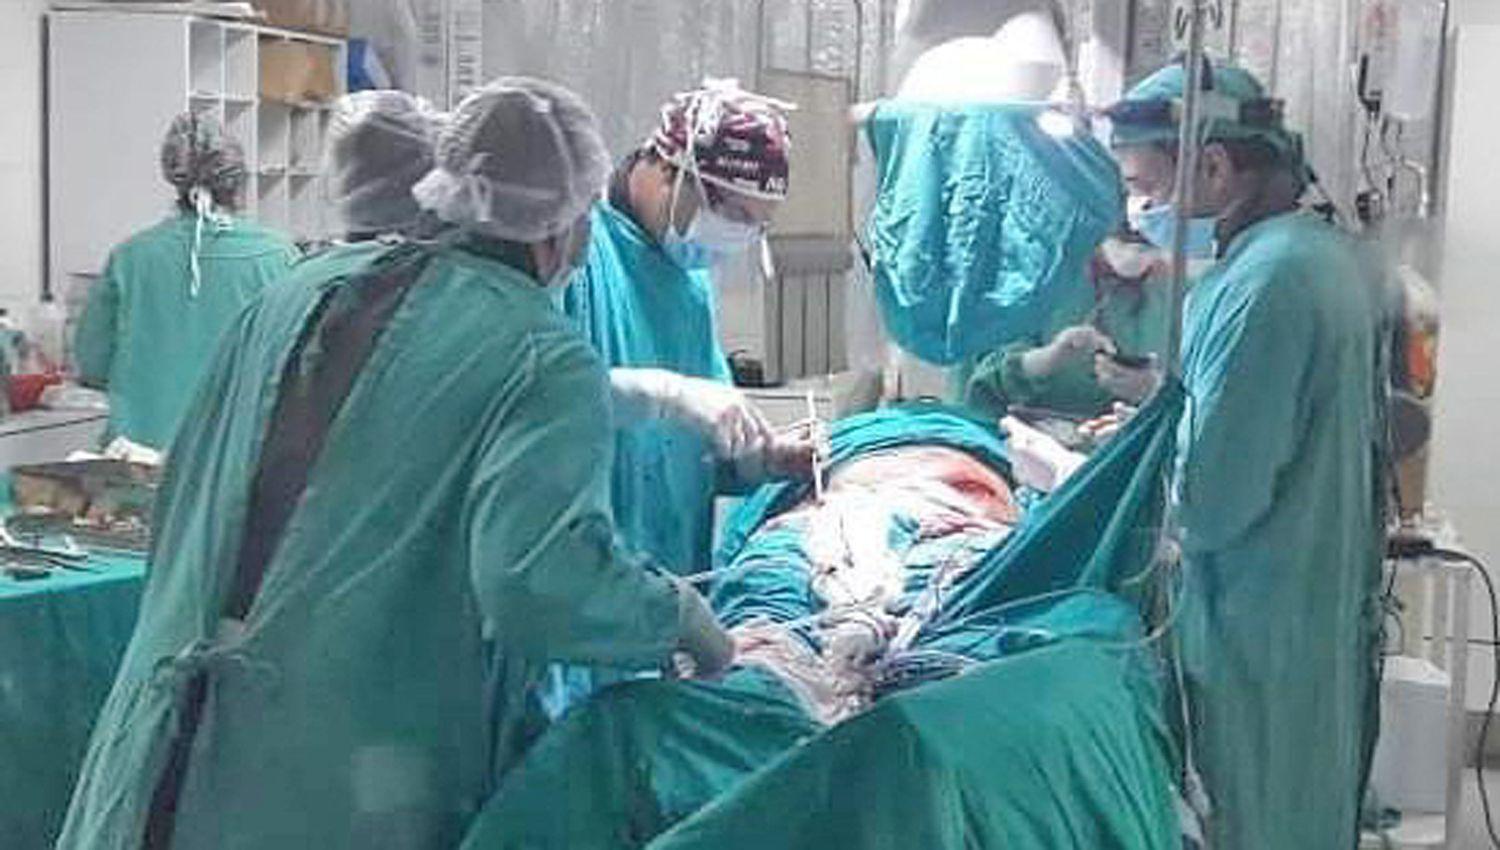 Profesionales santiaguentildeos realizaron una cirugiacutea vascular ineacutedita en nuestra provincia